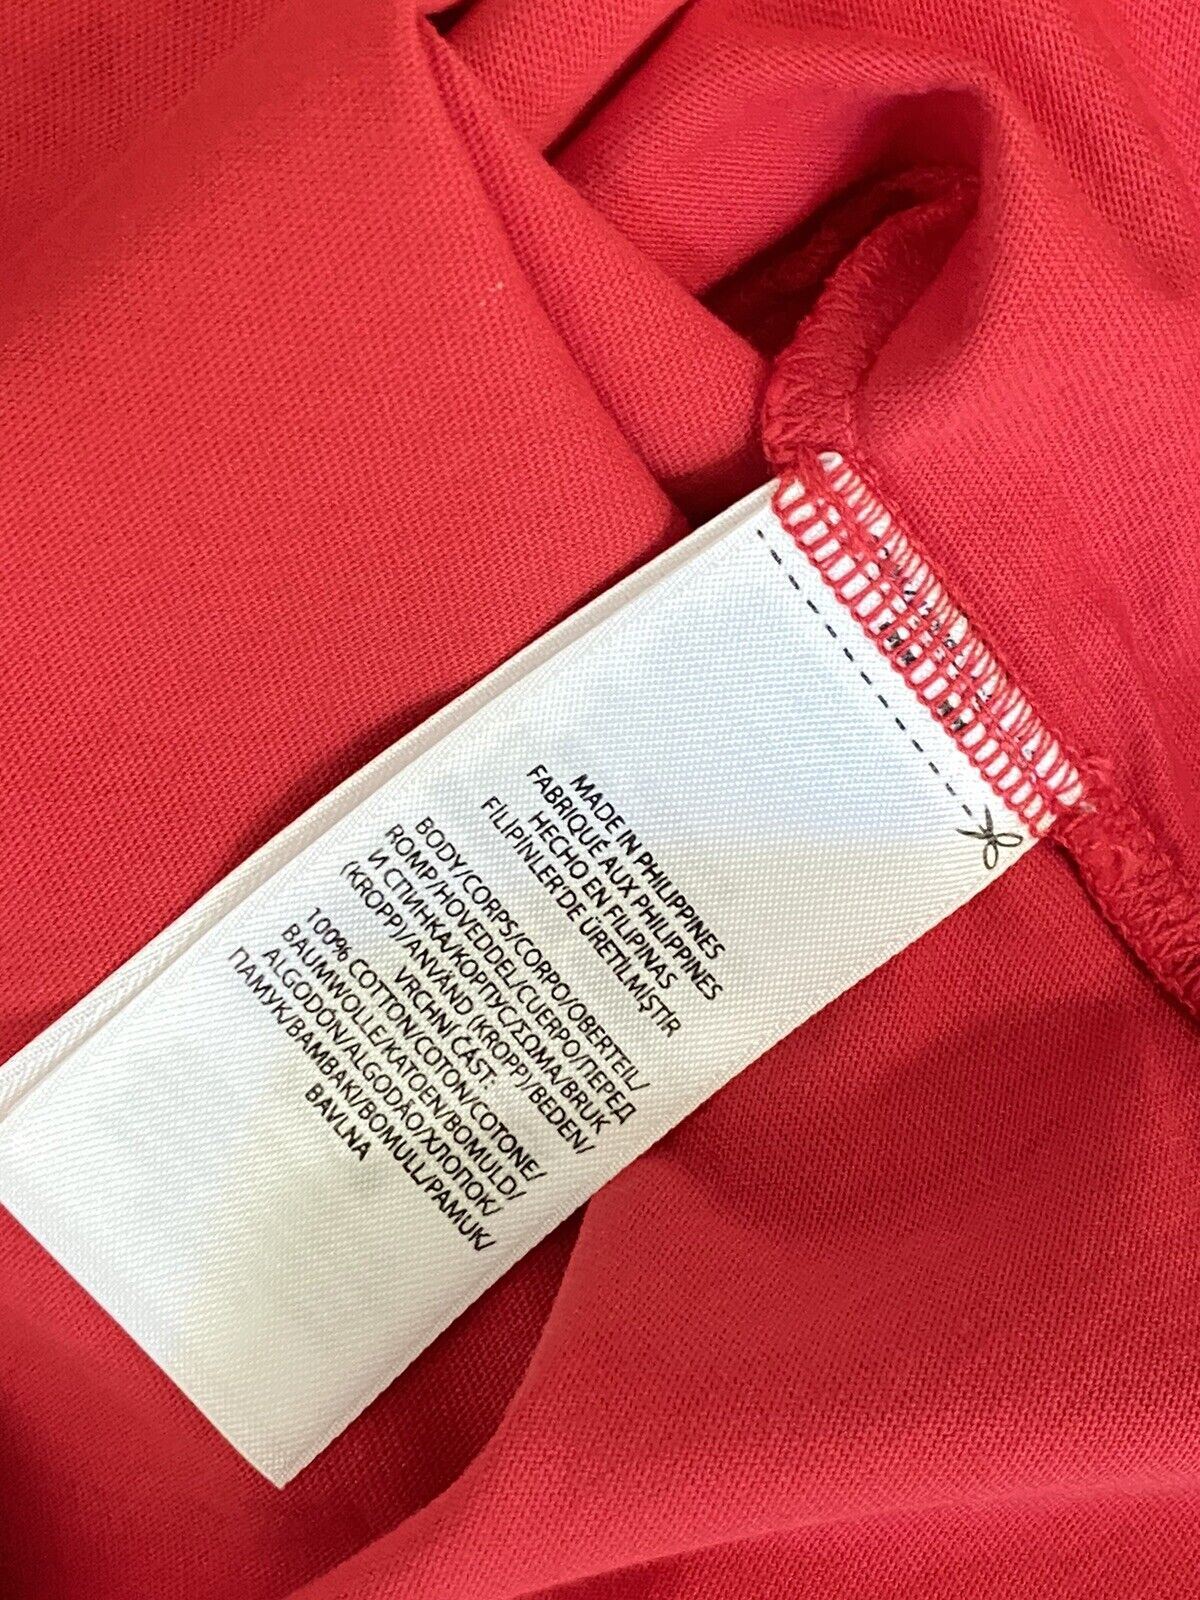 NWT Polo Ralph Lauren Short Sleeve Signature Logo T-shirt Red 2XL